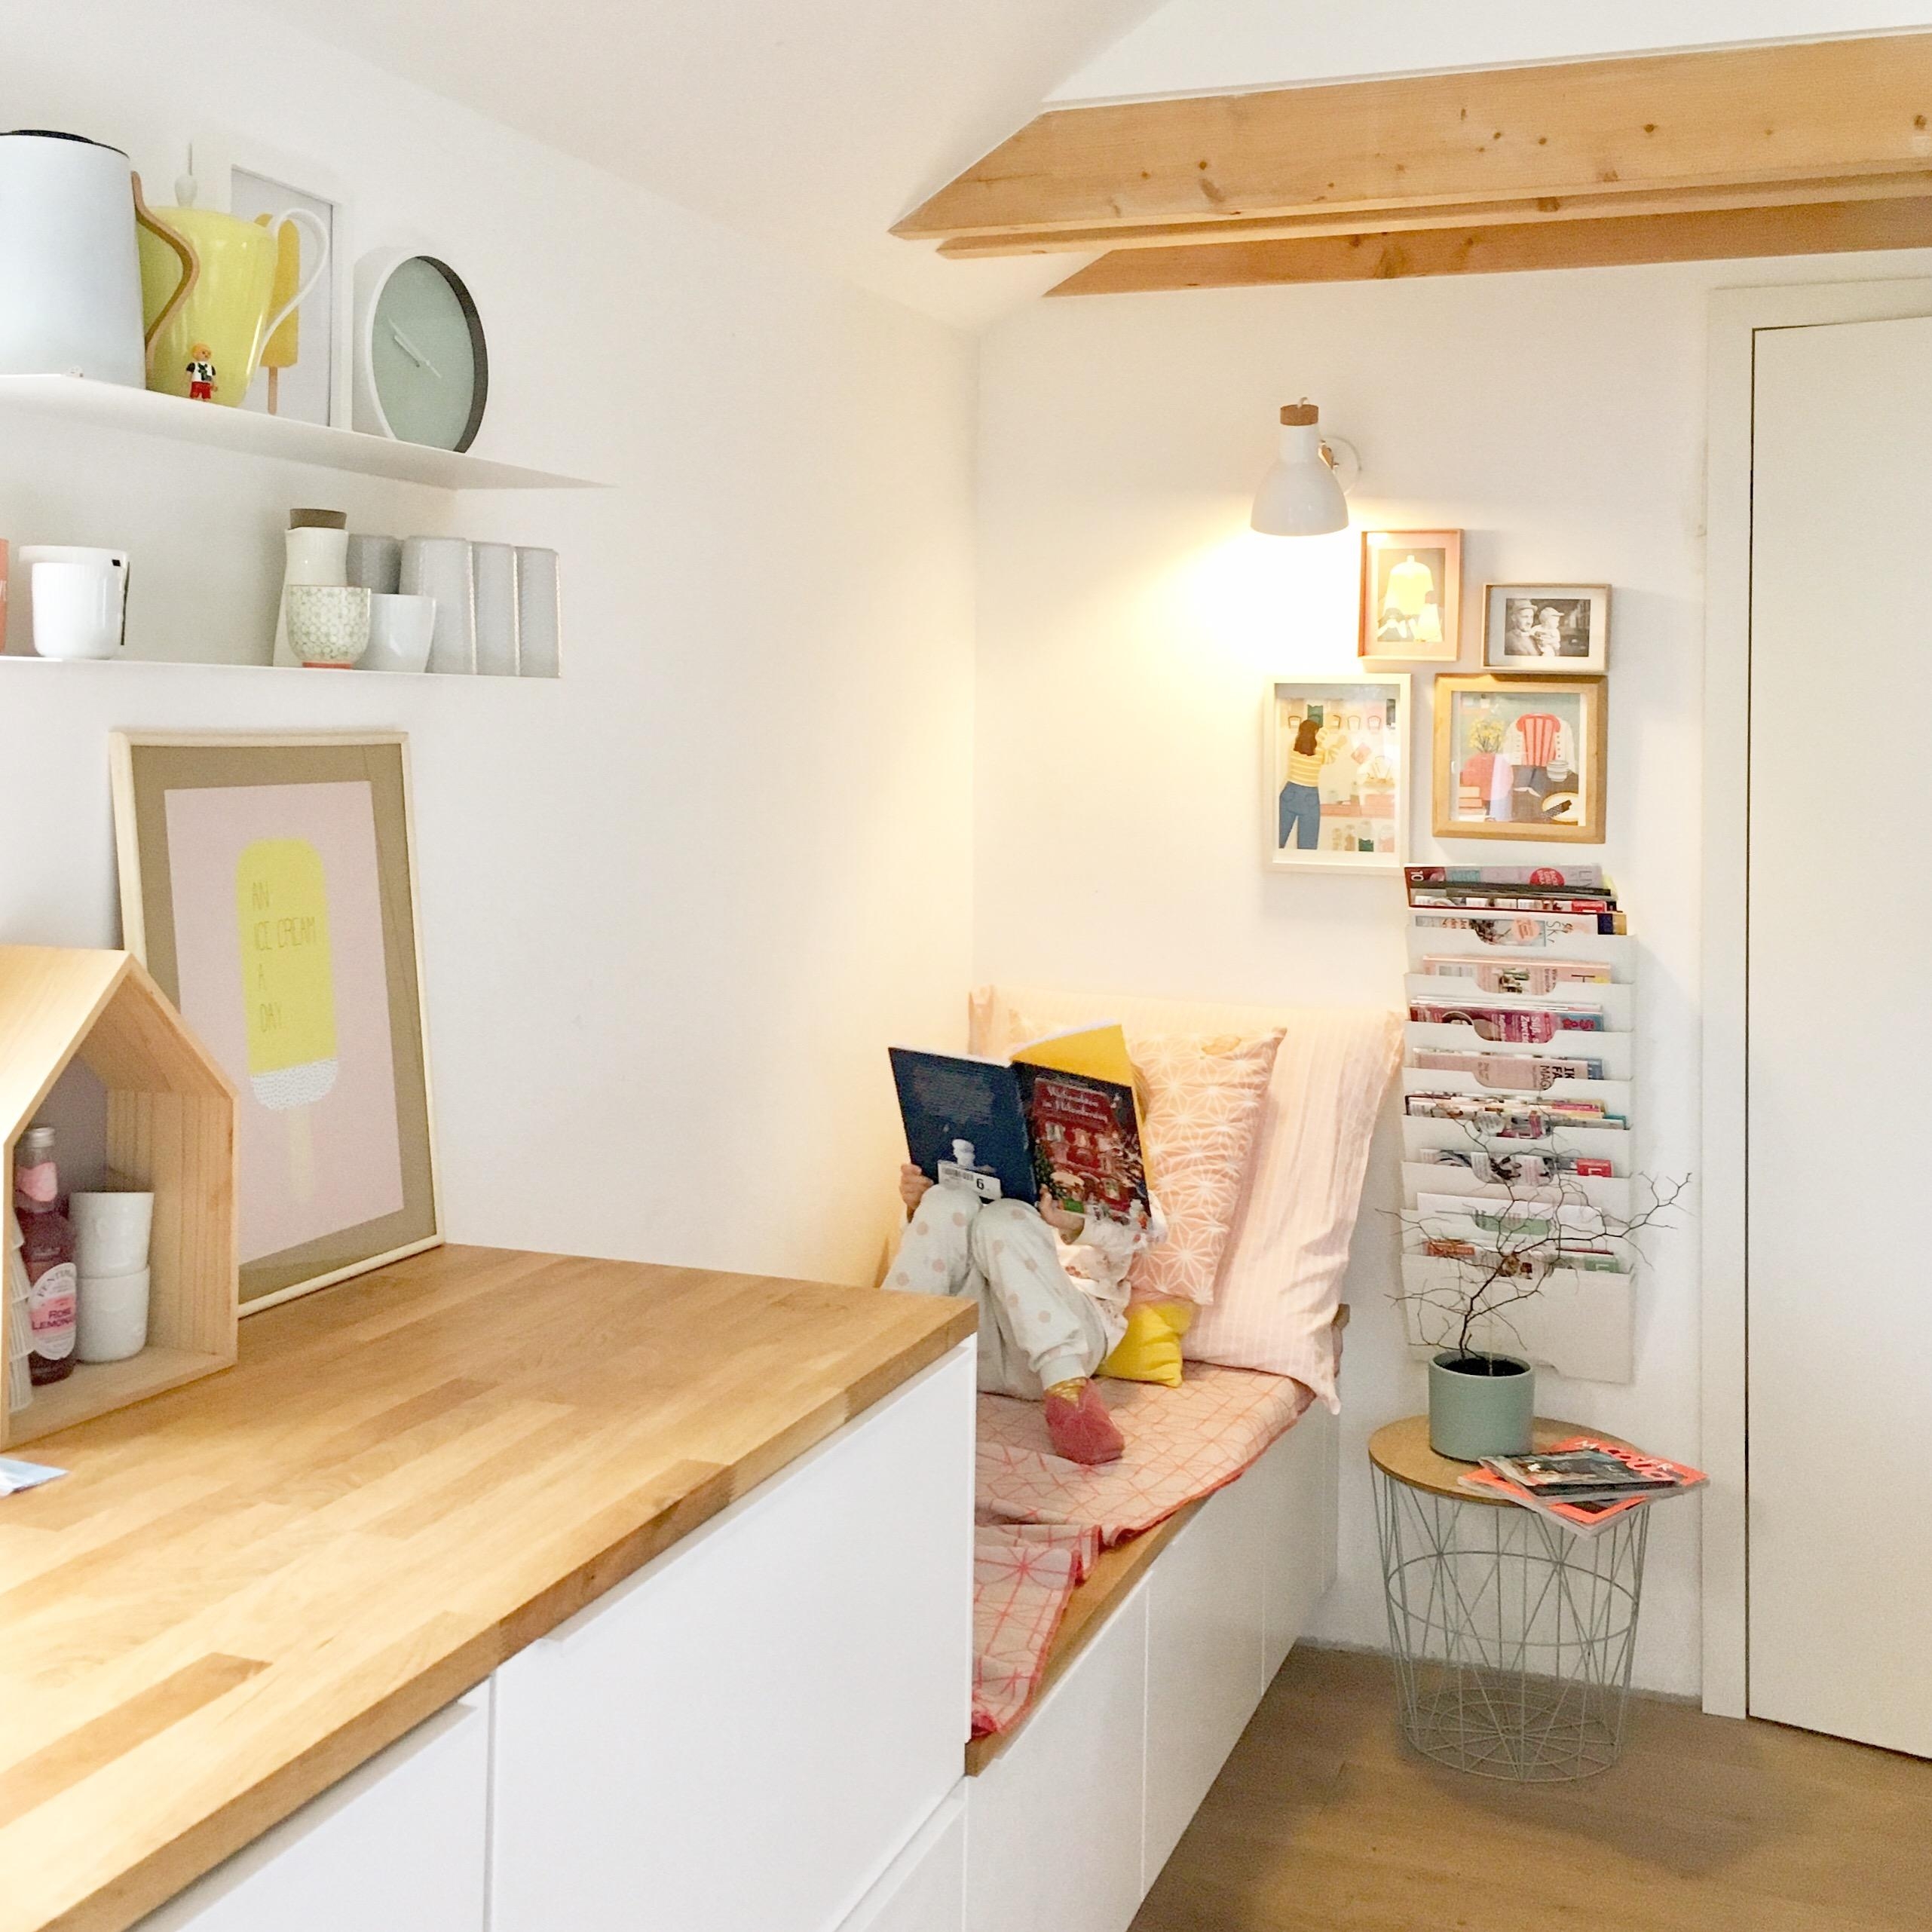 Die beste Ecke in der Küche. Her mit den Büchern ❤️ #küche #inneneinrichtung #couchstyle 